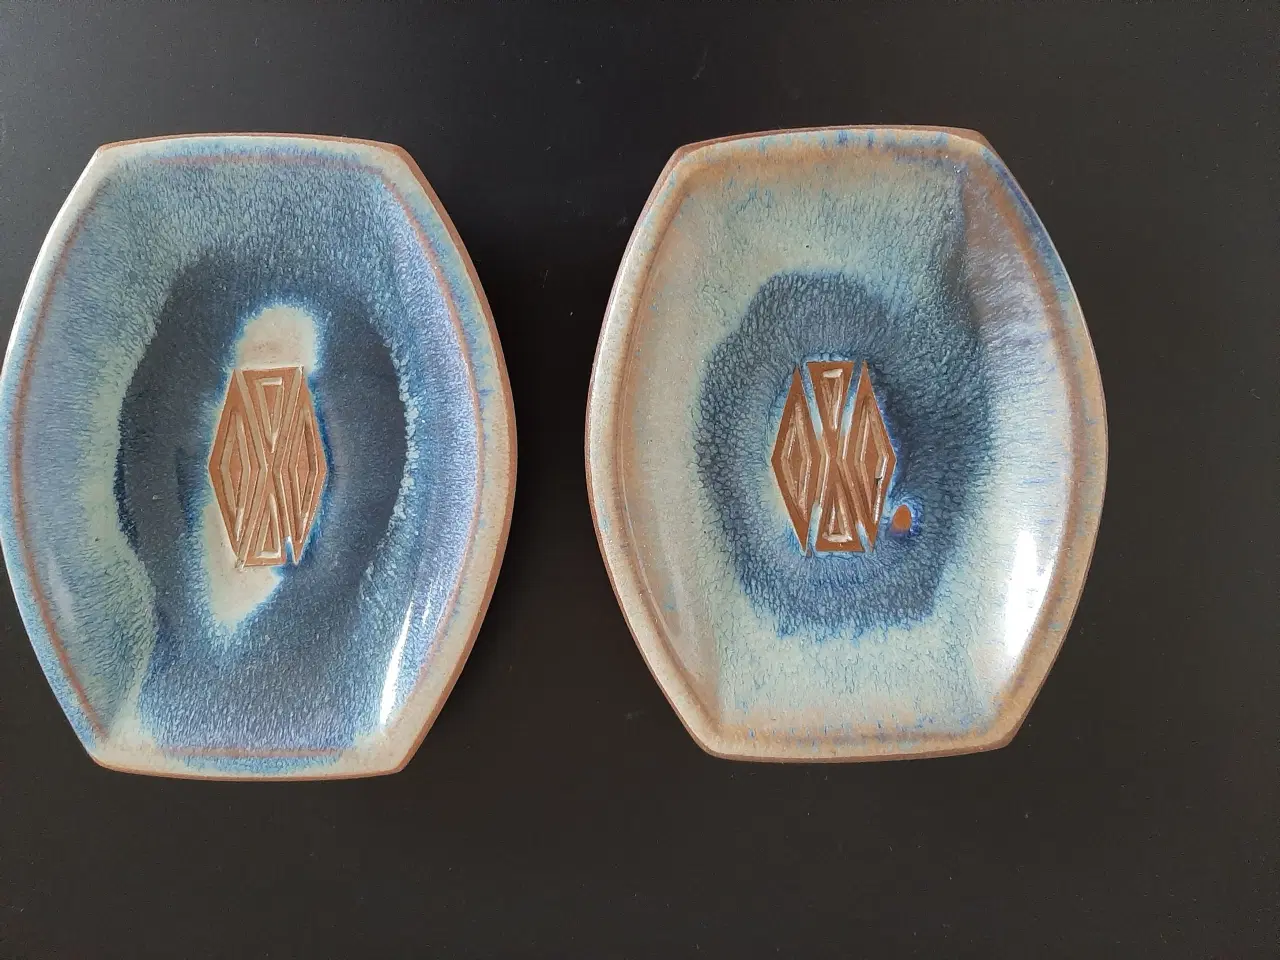 Billede 2 - 2 flotte askebære af Keramiker Michael Andersen